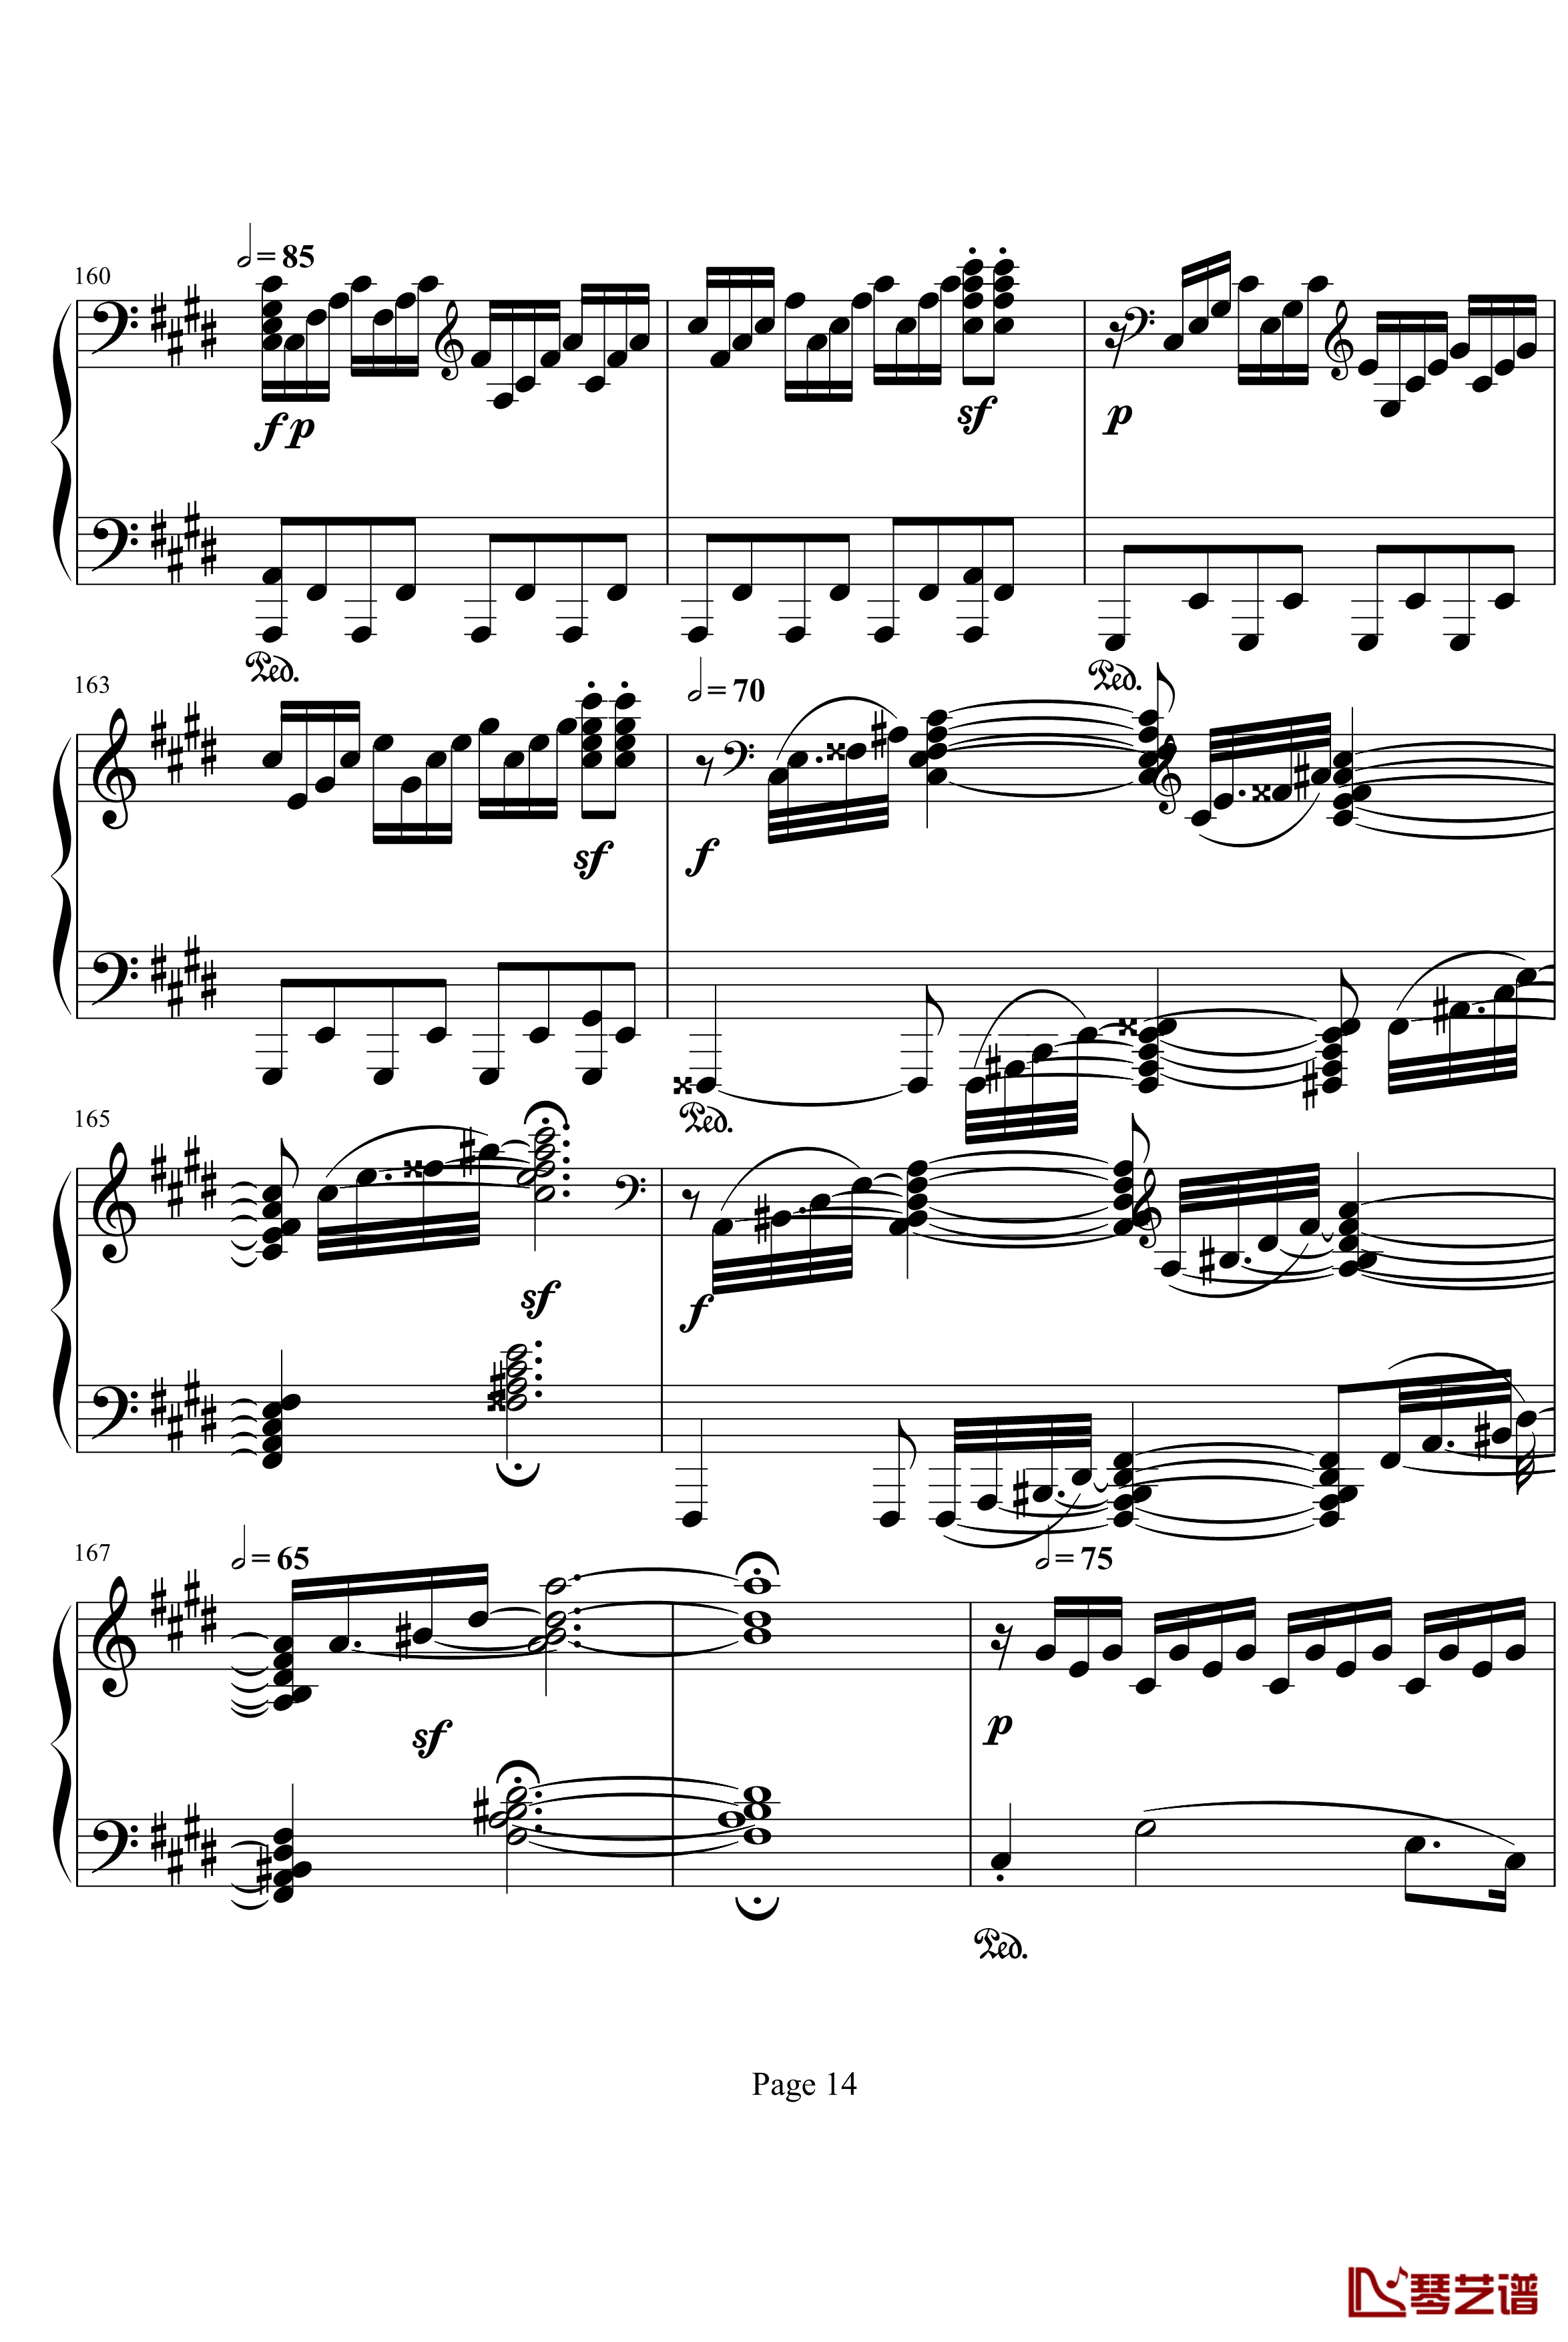 月光奏明曲钢琴谱-作品27之2-贝多芬-beethoven14